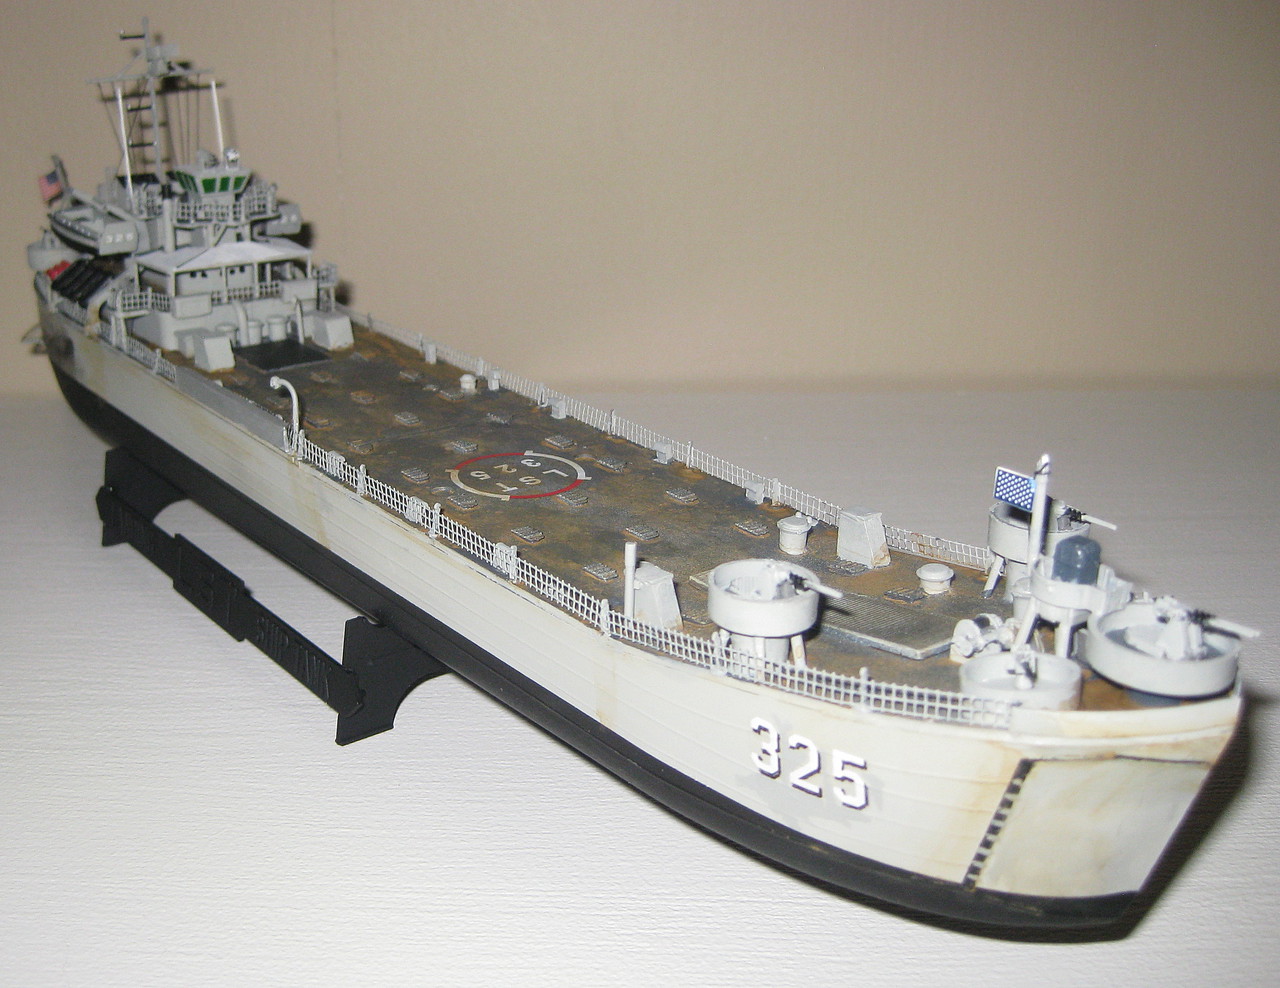 L S T Landing Ship Tank Plastic Model Military Ship Kit 1 245